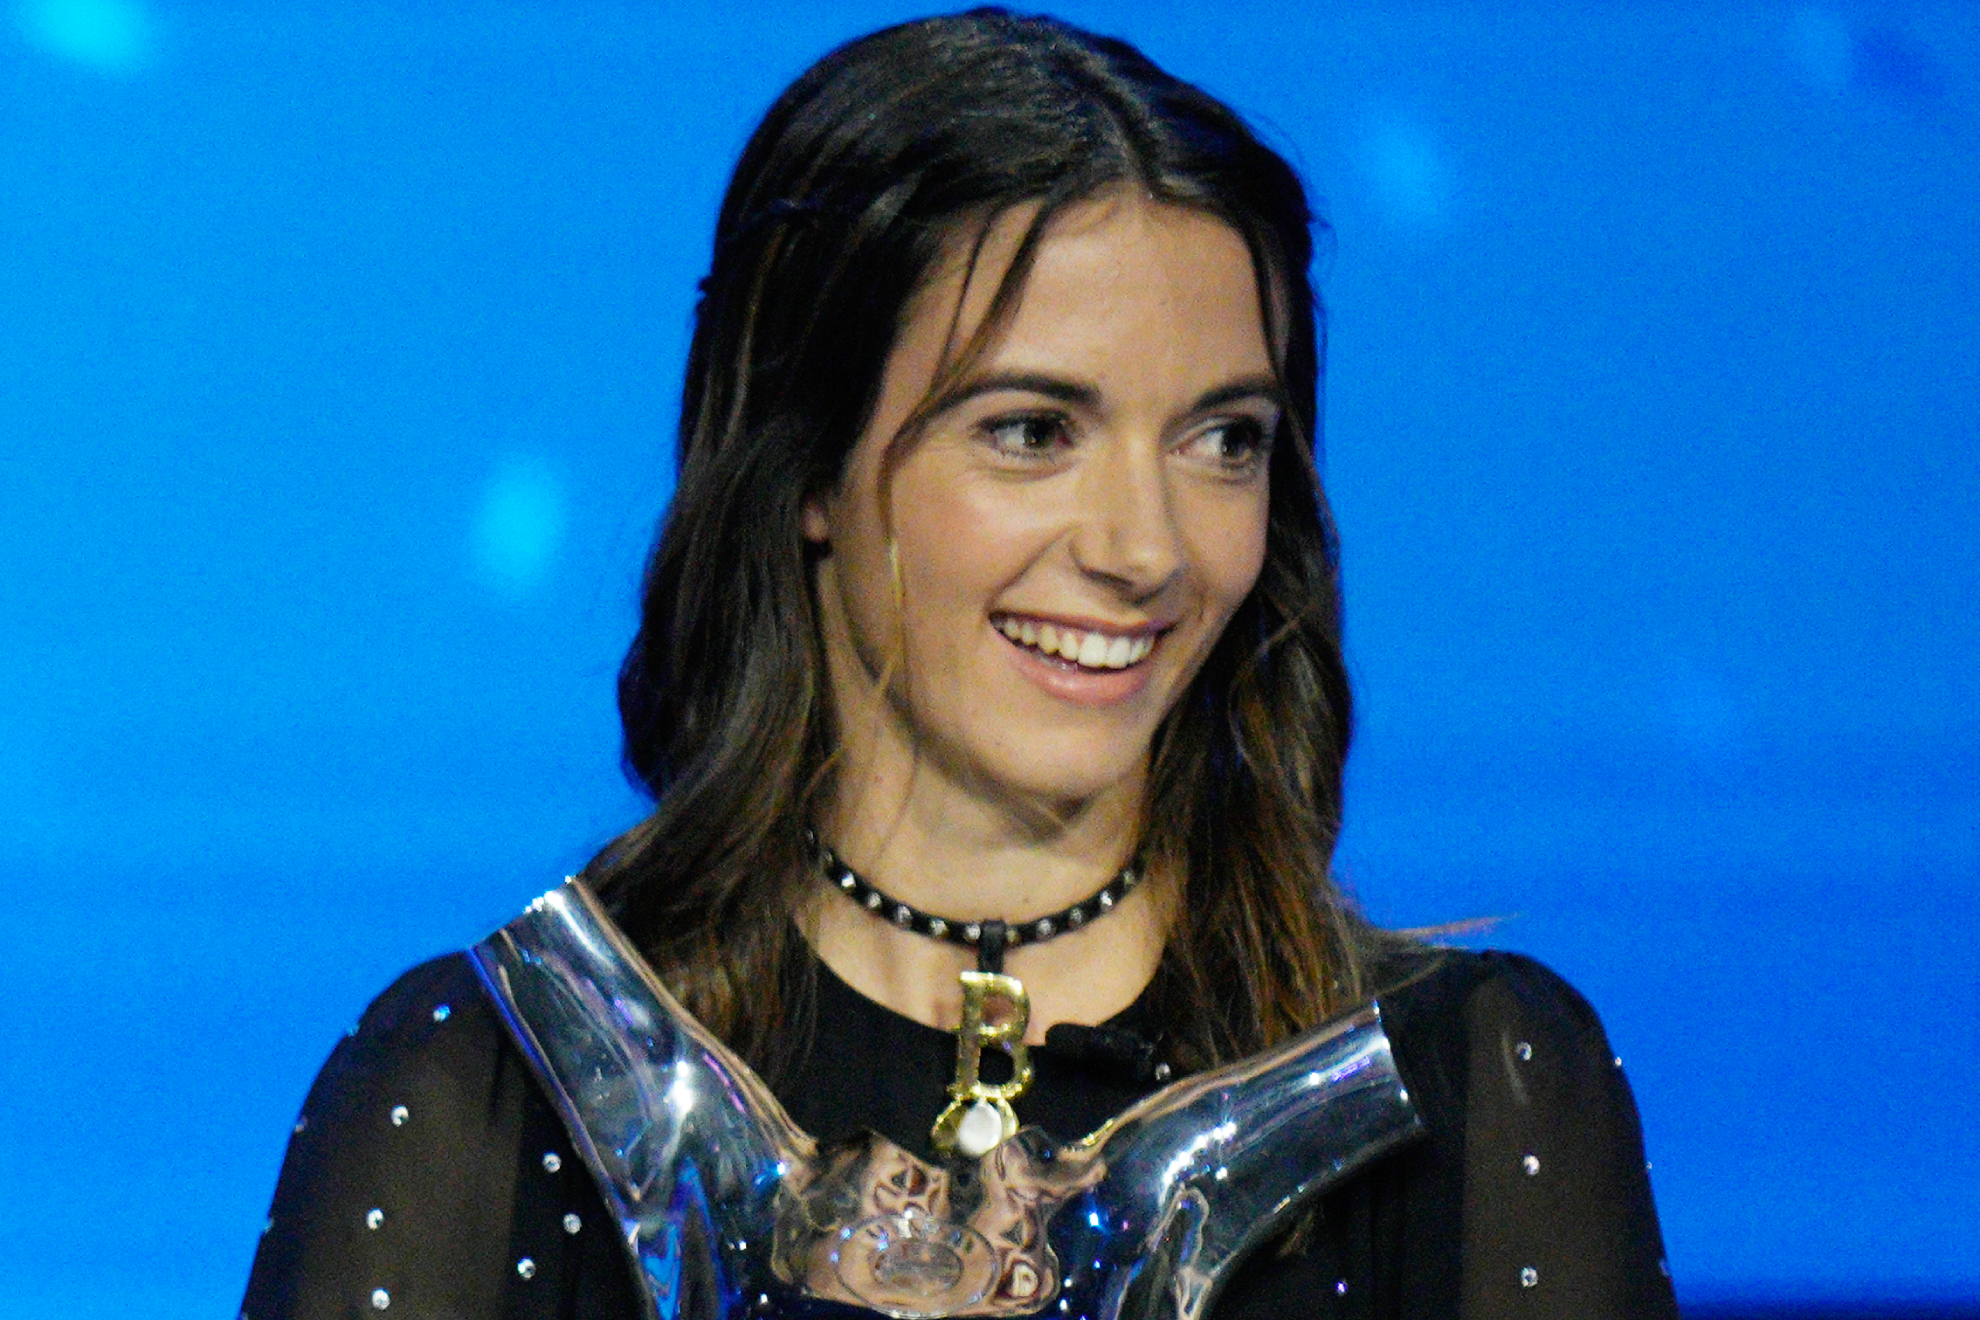 Aitana Bonmatí al recoger el premio a 'Mejor Jugadora' para la UEFA / LaPresse